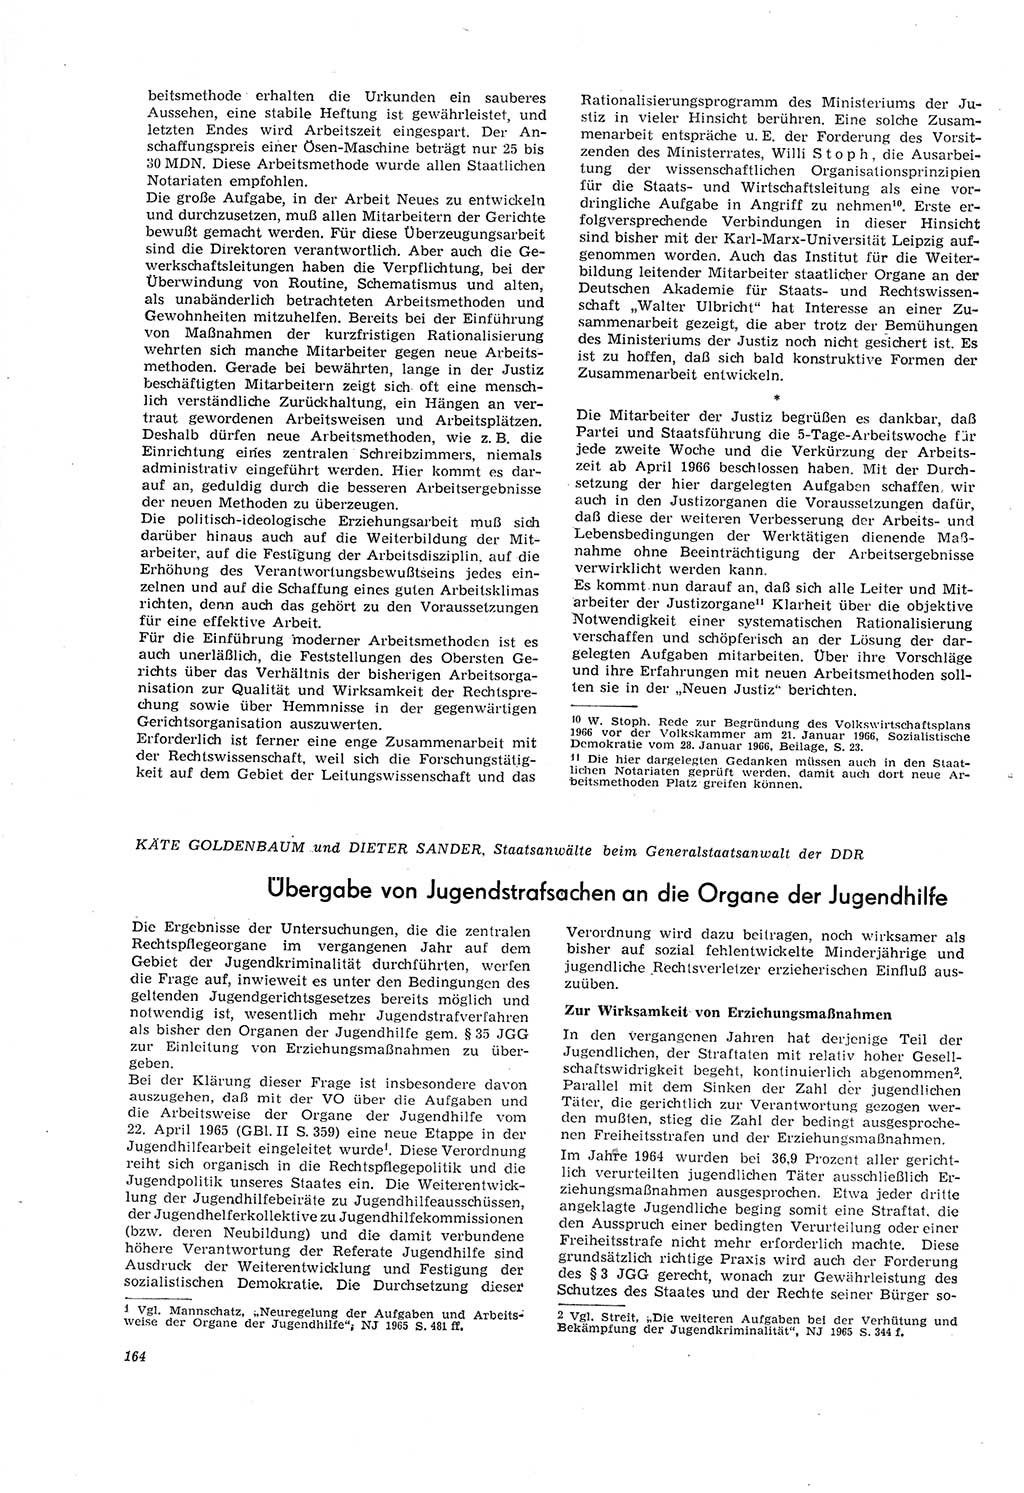 Neue Justiz (NJ), Zeitschrift für Recht und Rechtswissenschaft [Deutsche Demokratische Republik (DDR)], 20. Jahrgang 1966, Seite 164 (NJ DDR 1966, S. 164)